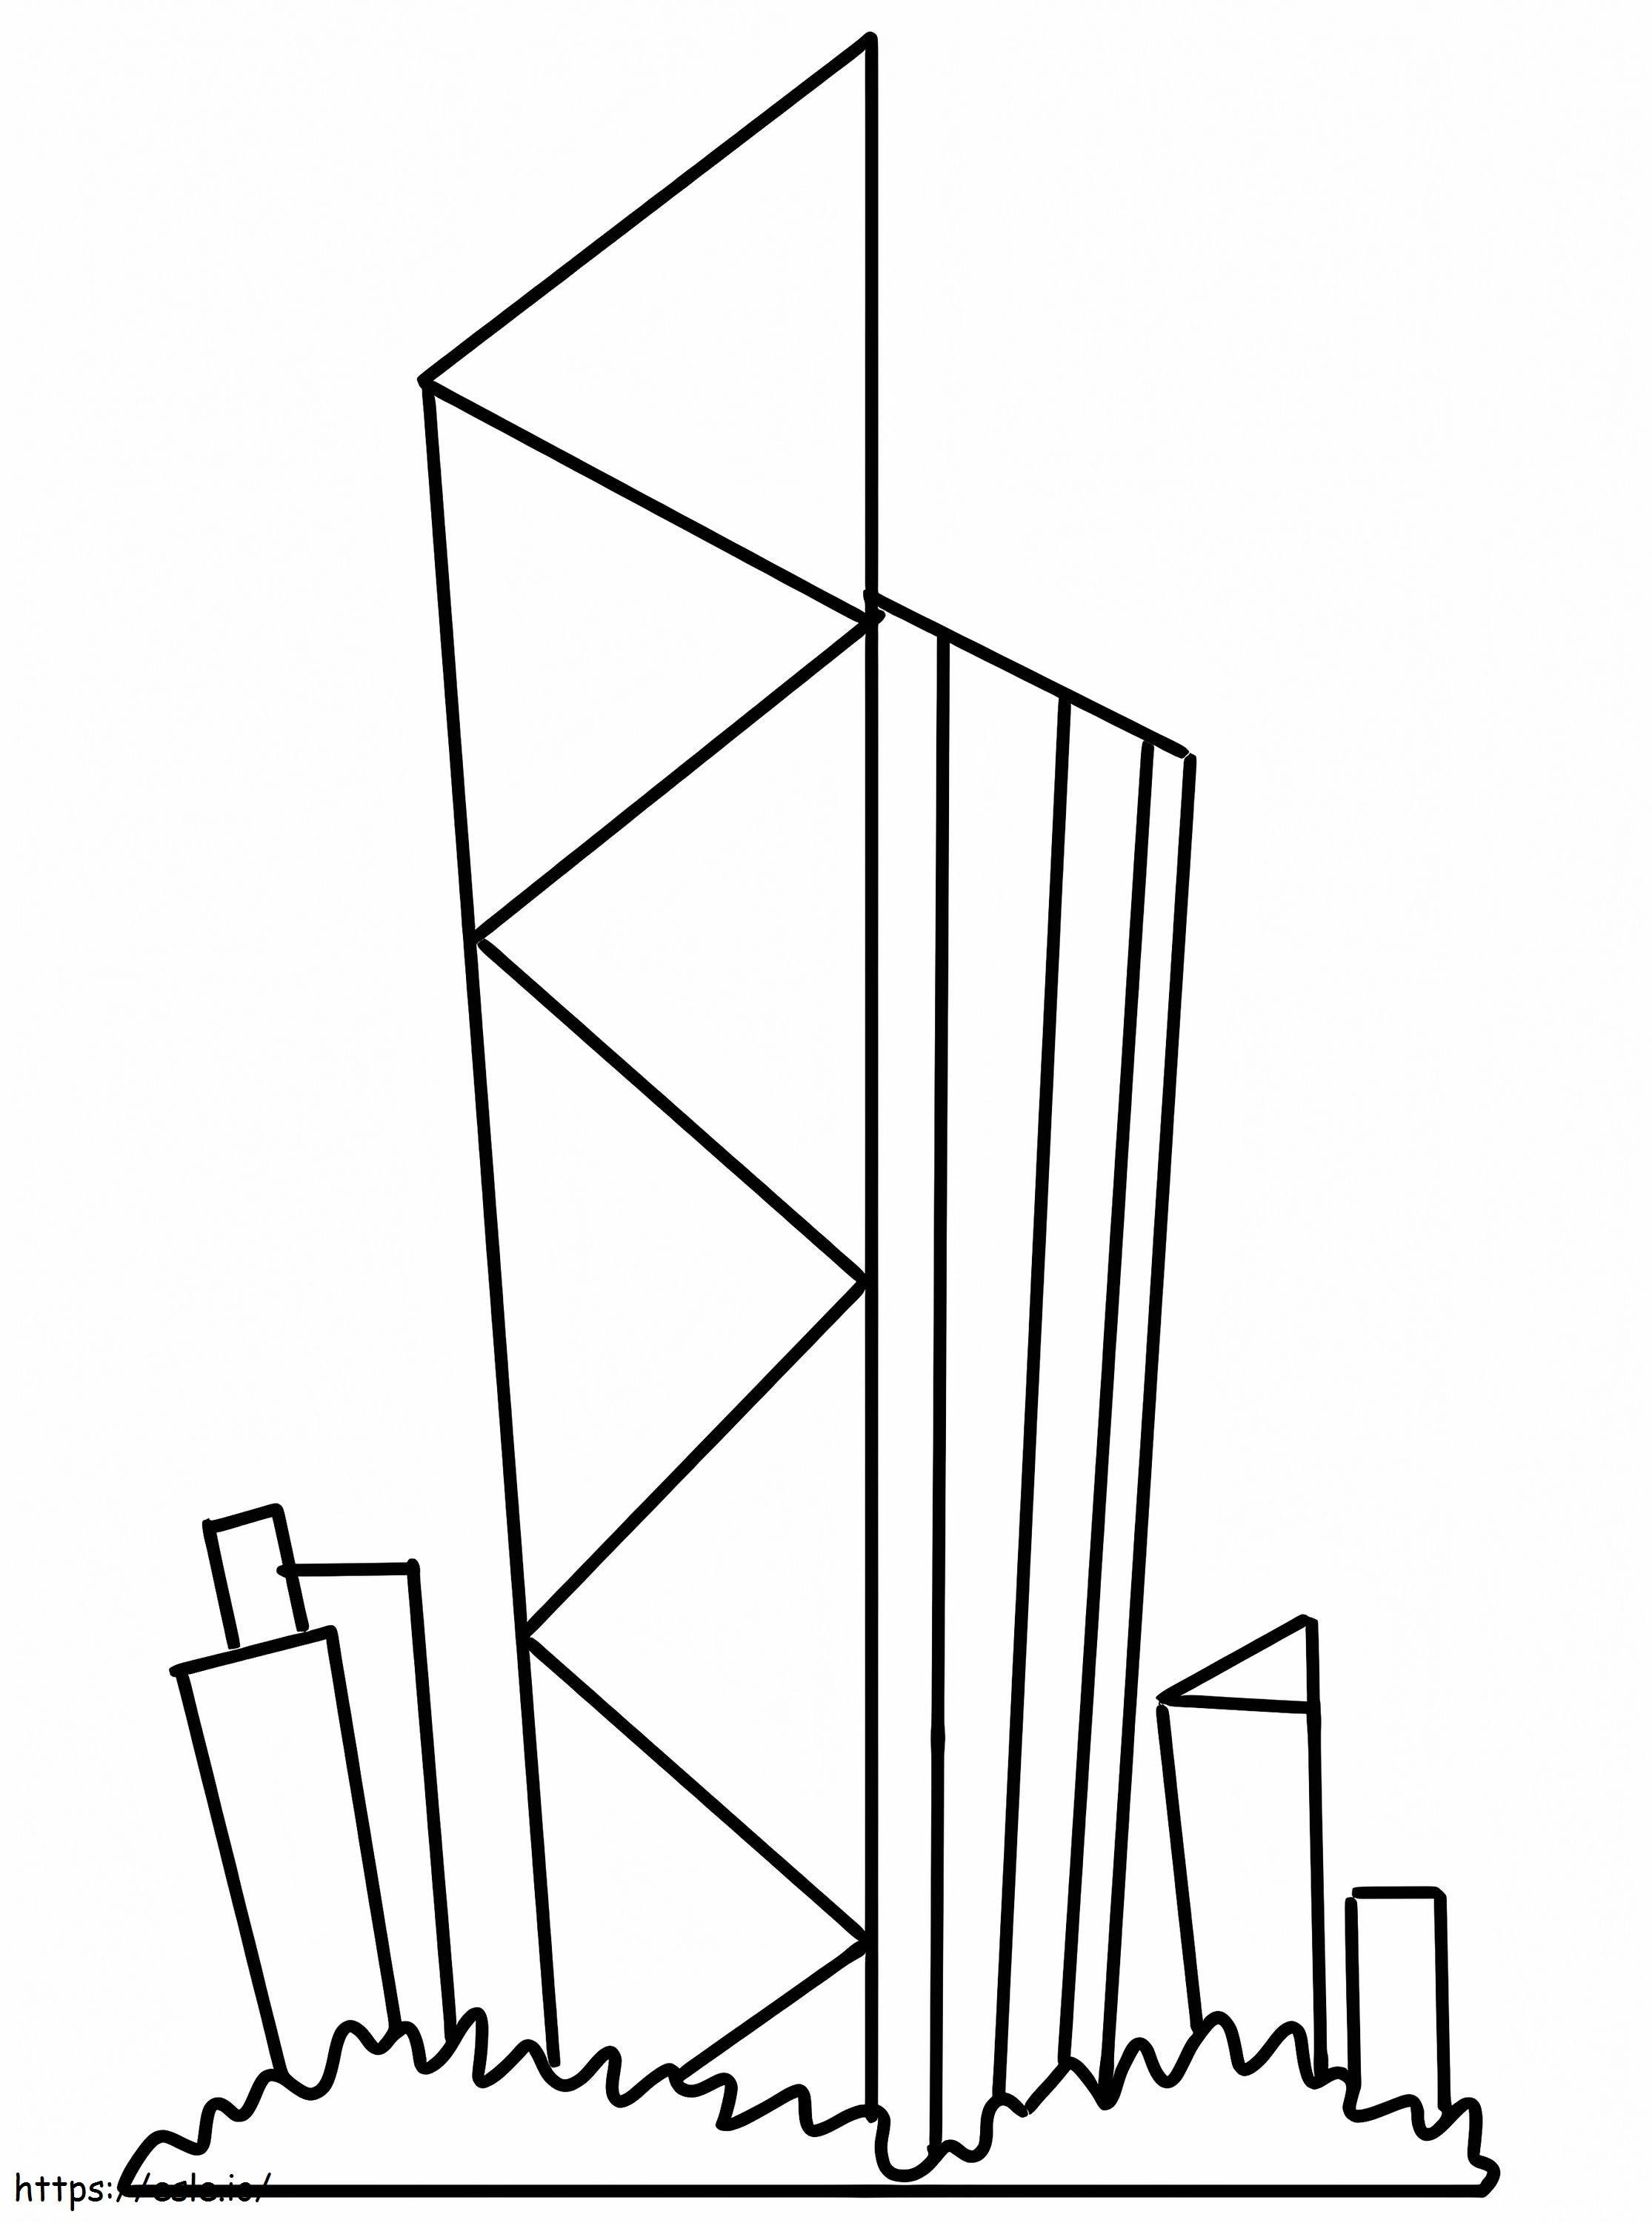 Easy Skyscraper coloring page